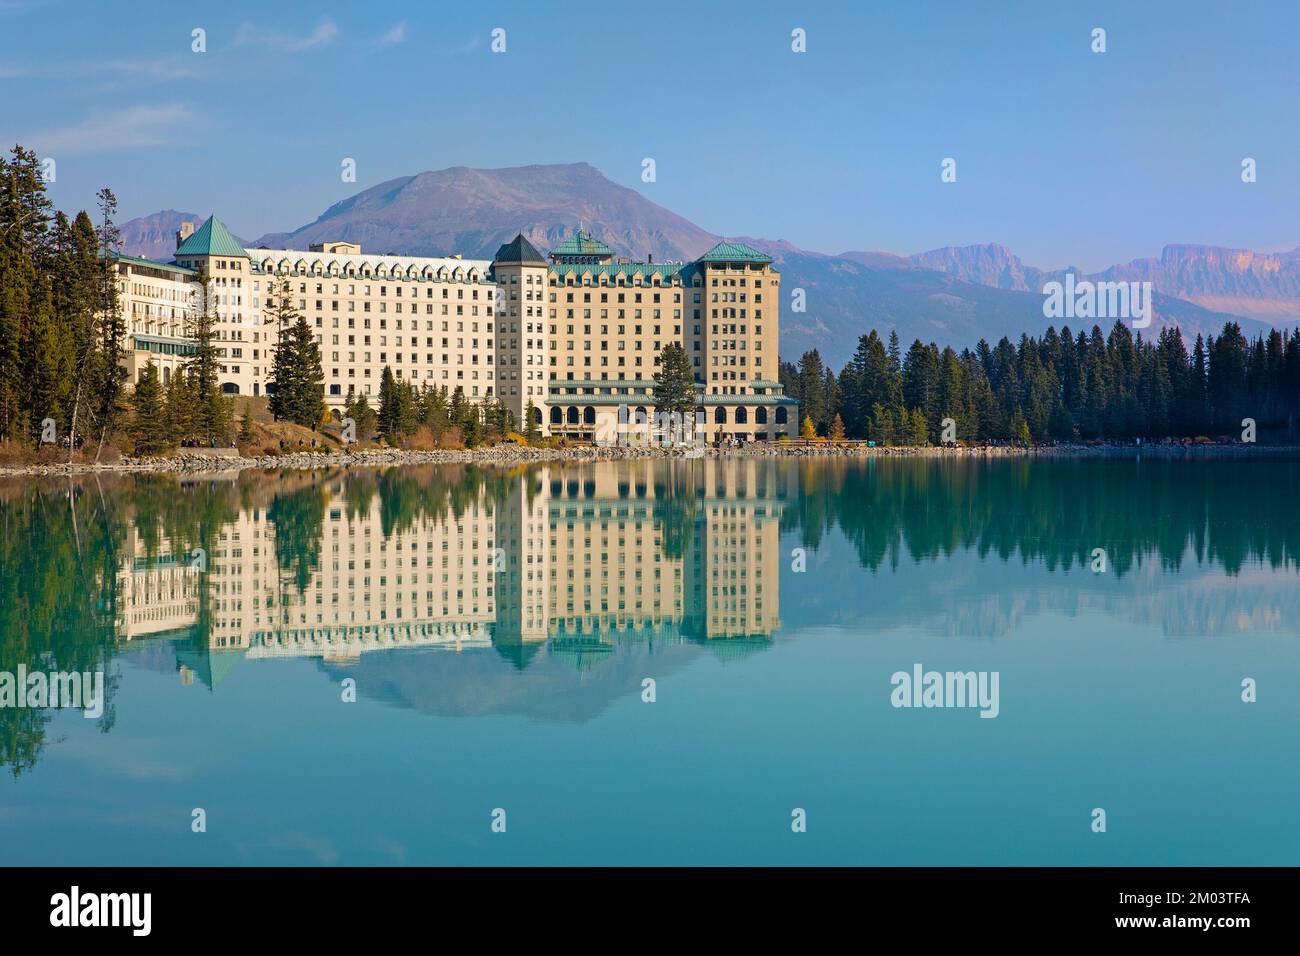 Hôtel Fairmont Chateau Lake Louise avec reflet dans les eaux turquoise du lac, parc national Banff, Canada Banque D'Images